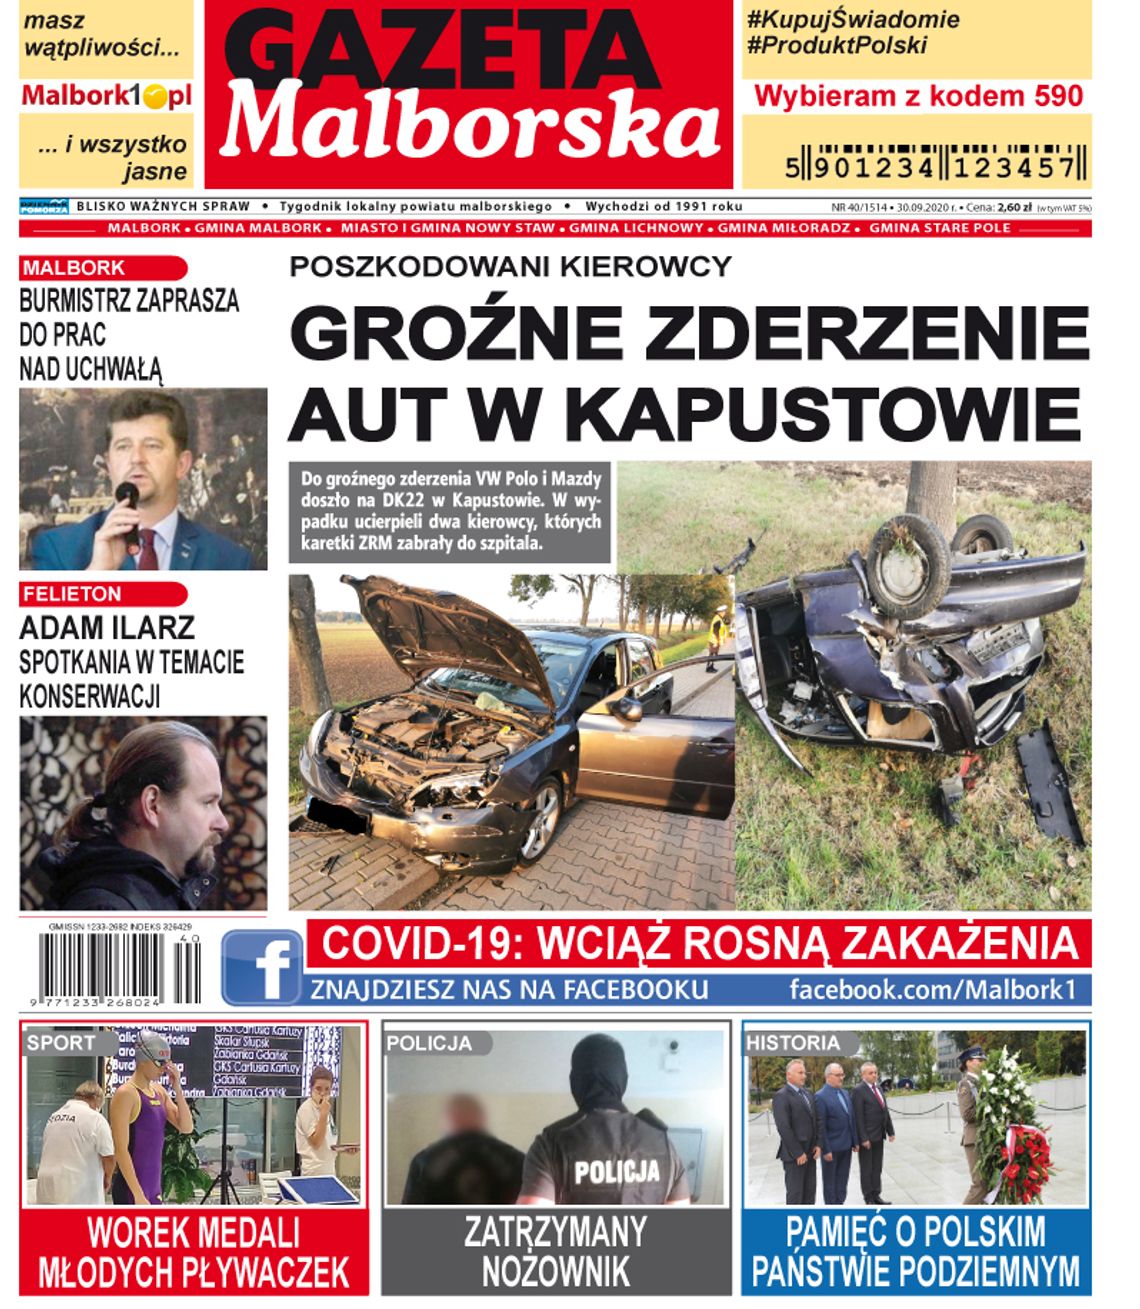 Najświeższe wiadomości z Malborka i gmin powiatu dostępne w Gazecie Malborskiej. Nowy numer tygodnika już dziś w Twoim sklepie! Co w środku?